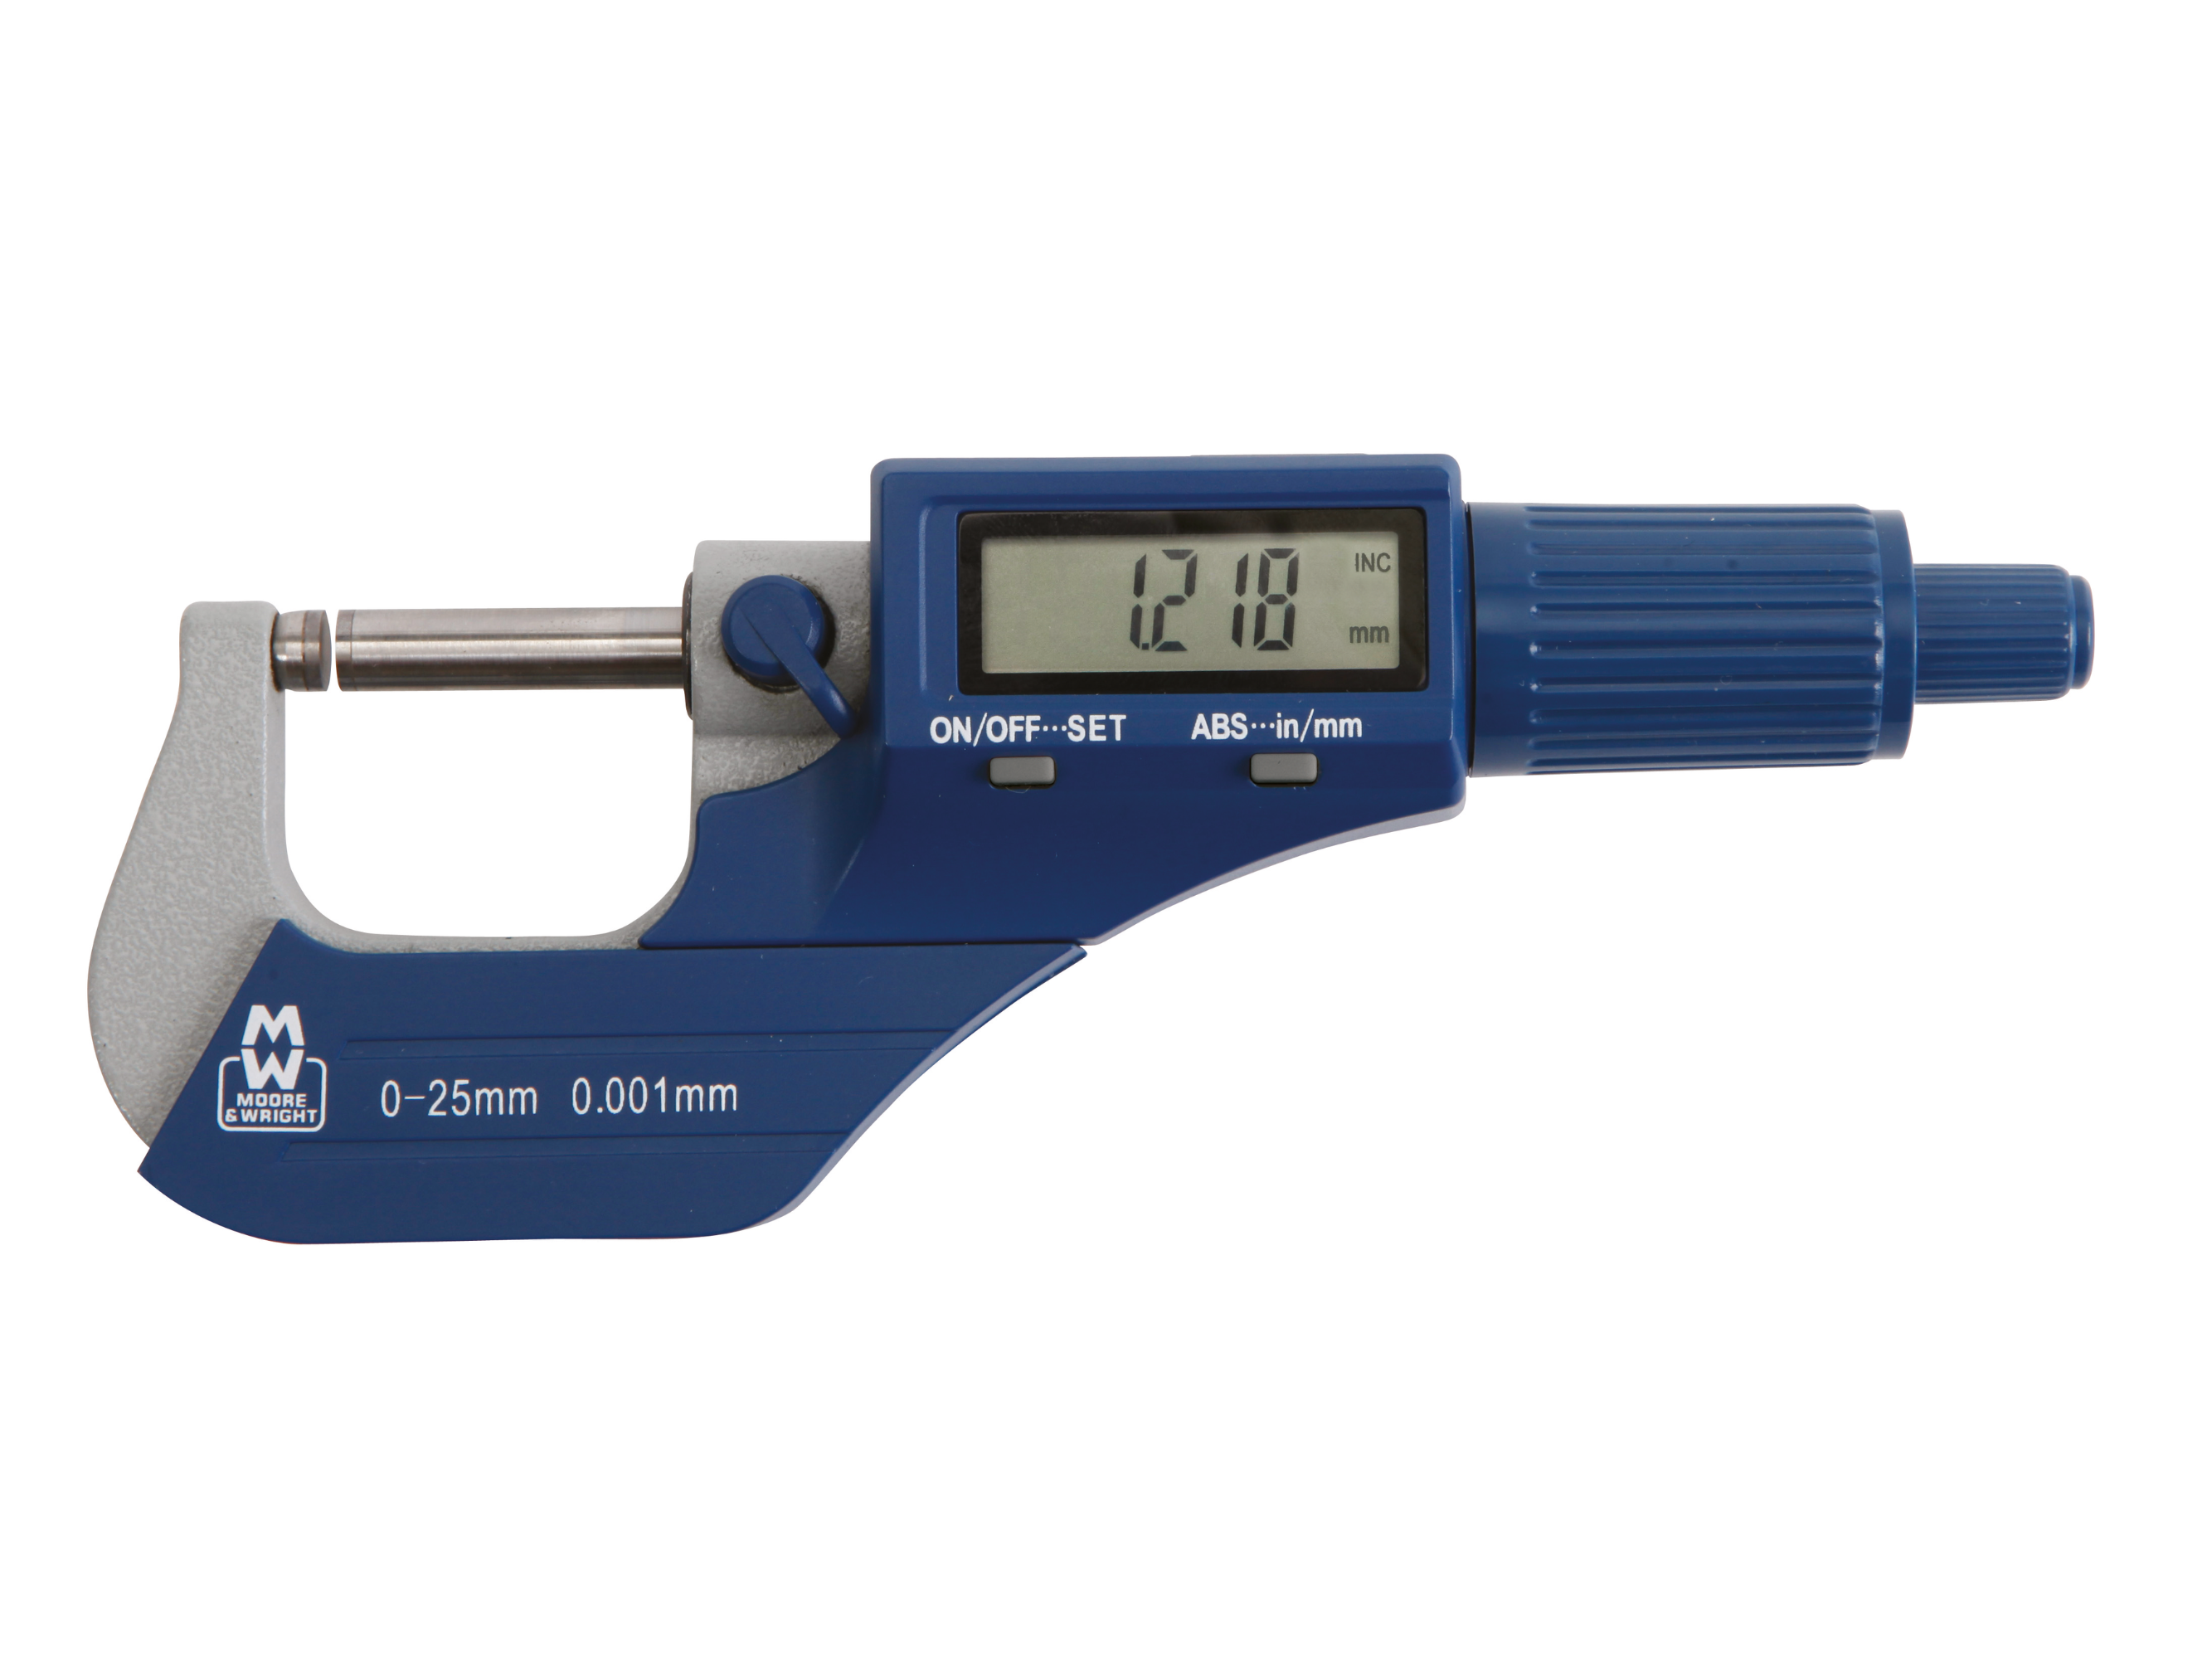 Workshop Digital Micrometer 0-25mm 0.001mm MW200-01DBL